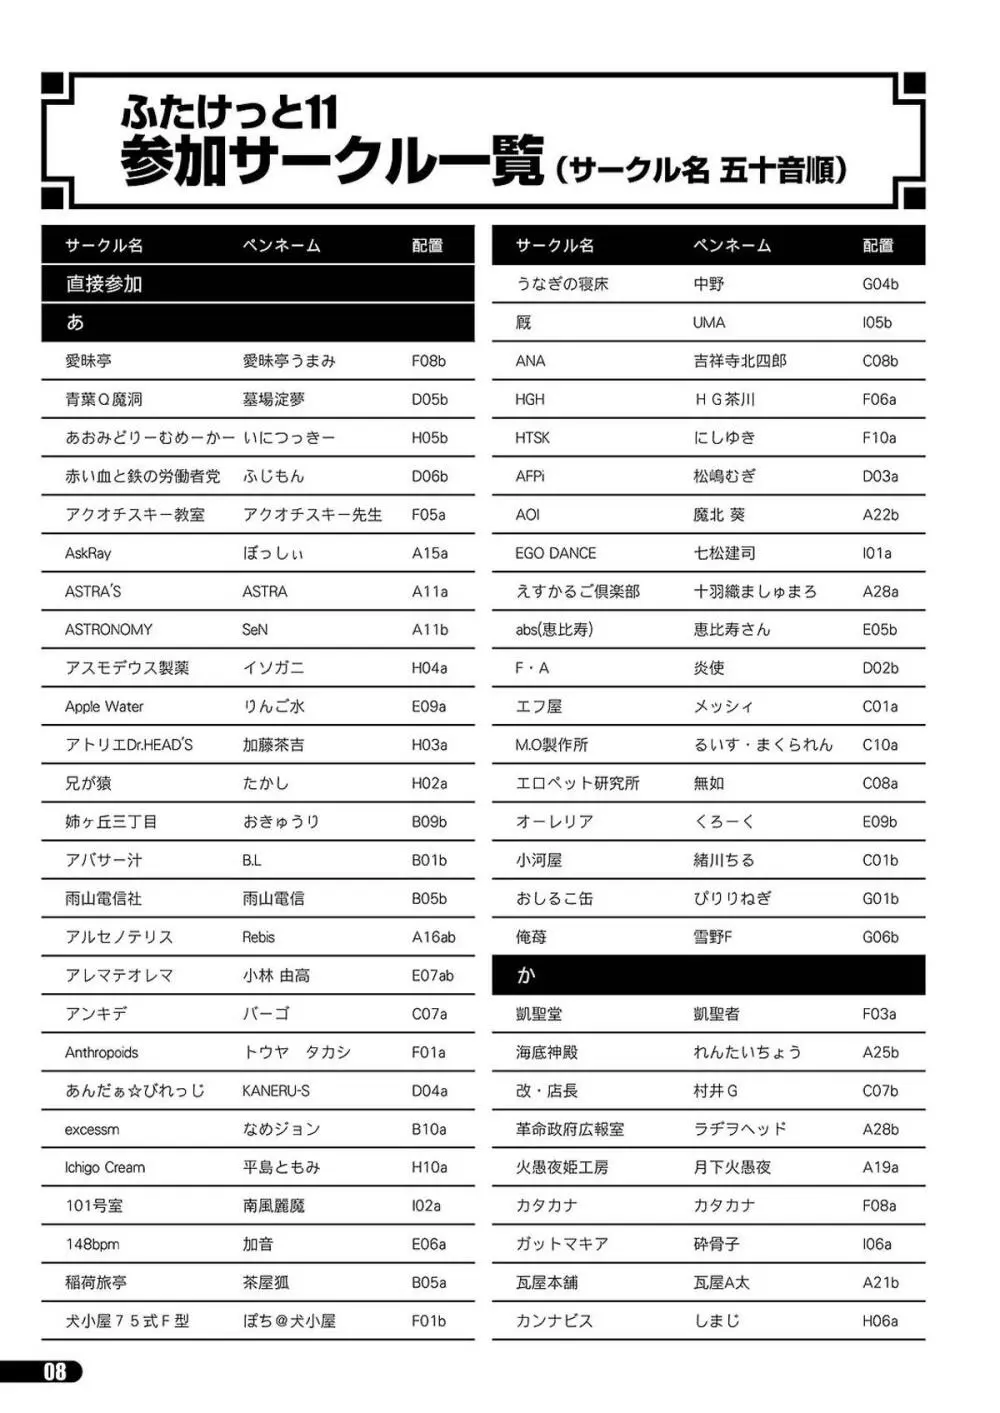 「ふたけっと11」PDF版カタログ 8ページ